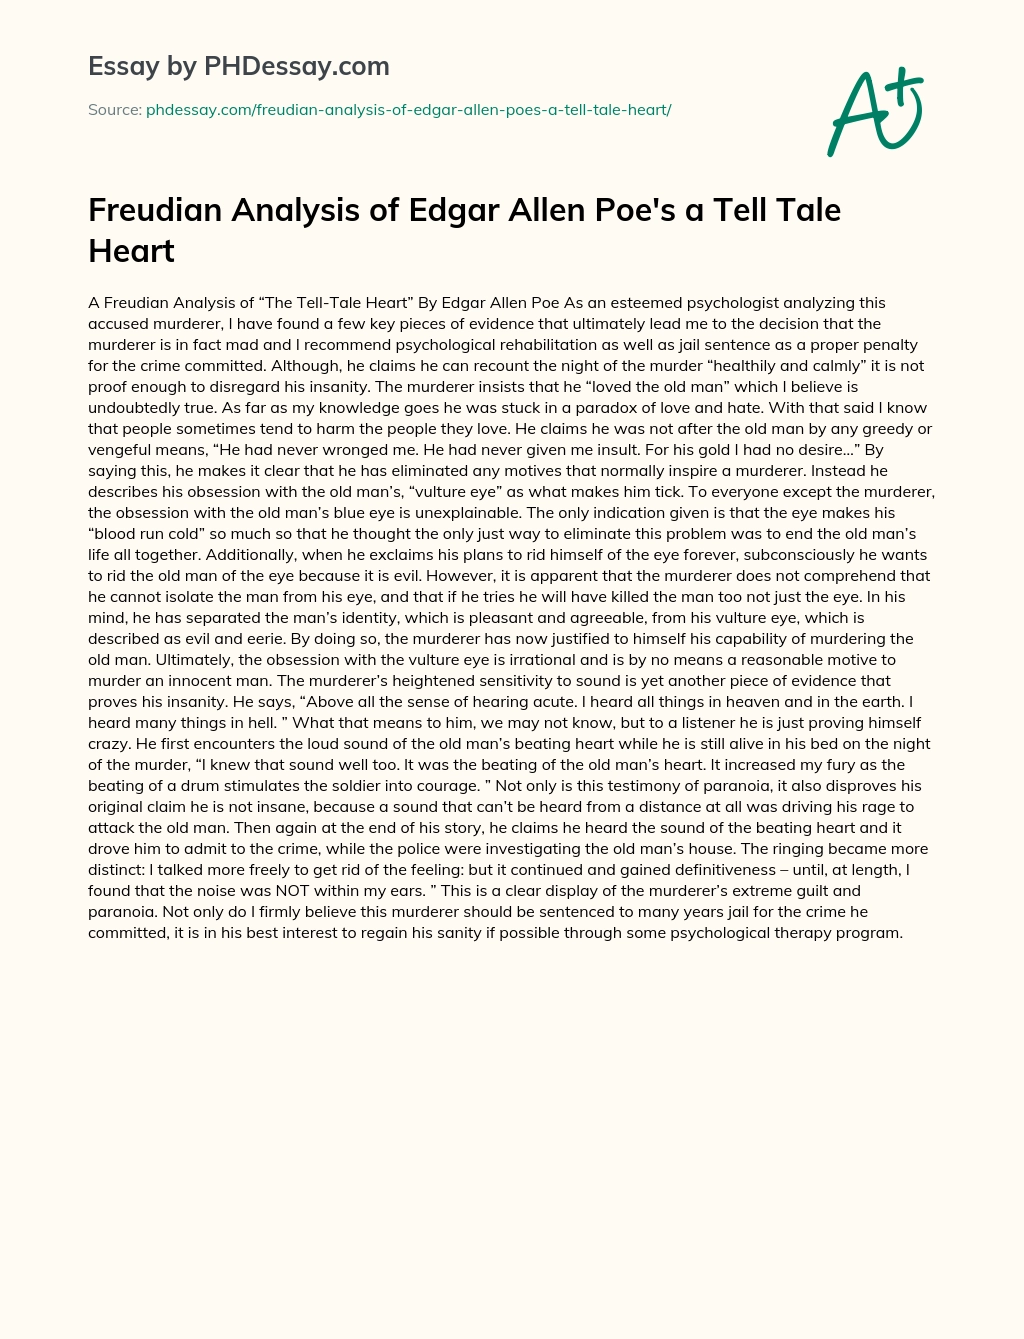 Freudian Analysis of Edgar Allen Poe’s a Tell Tale Heart essay